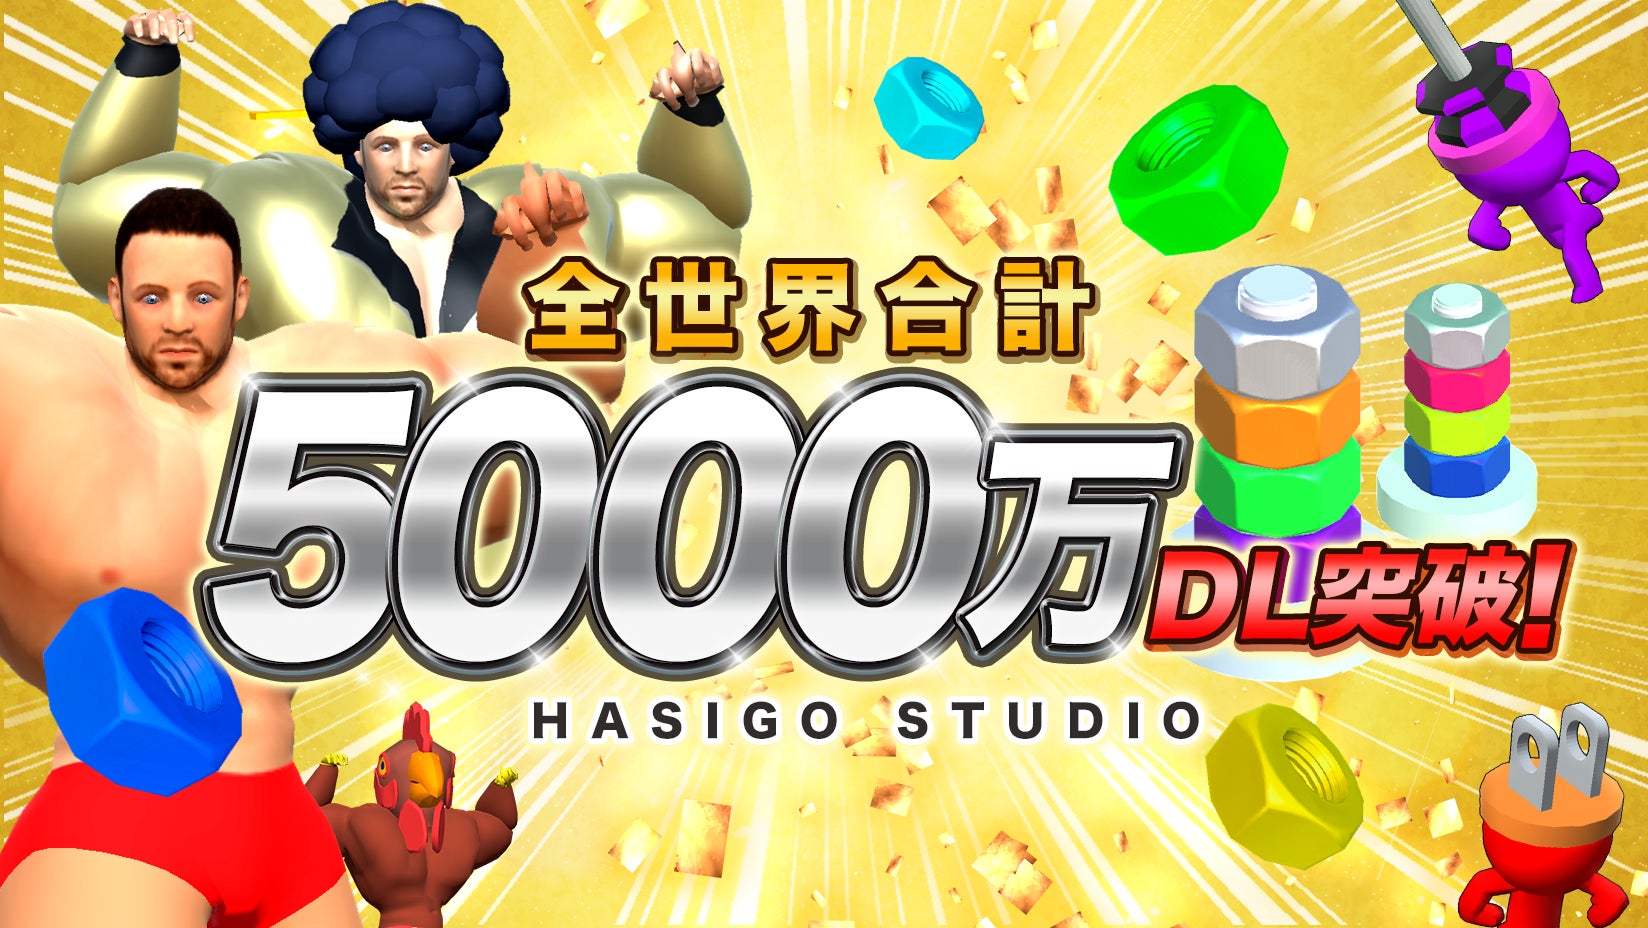 ハイパーカジュアルゲームスタジオ「HASIGO」、設立から1年で全世界で5,000万ダウンロードを突破！